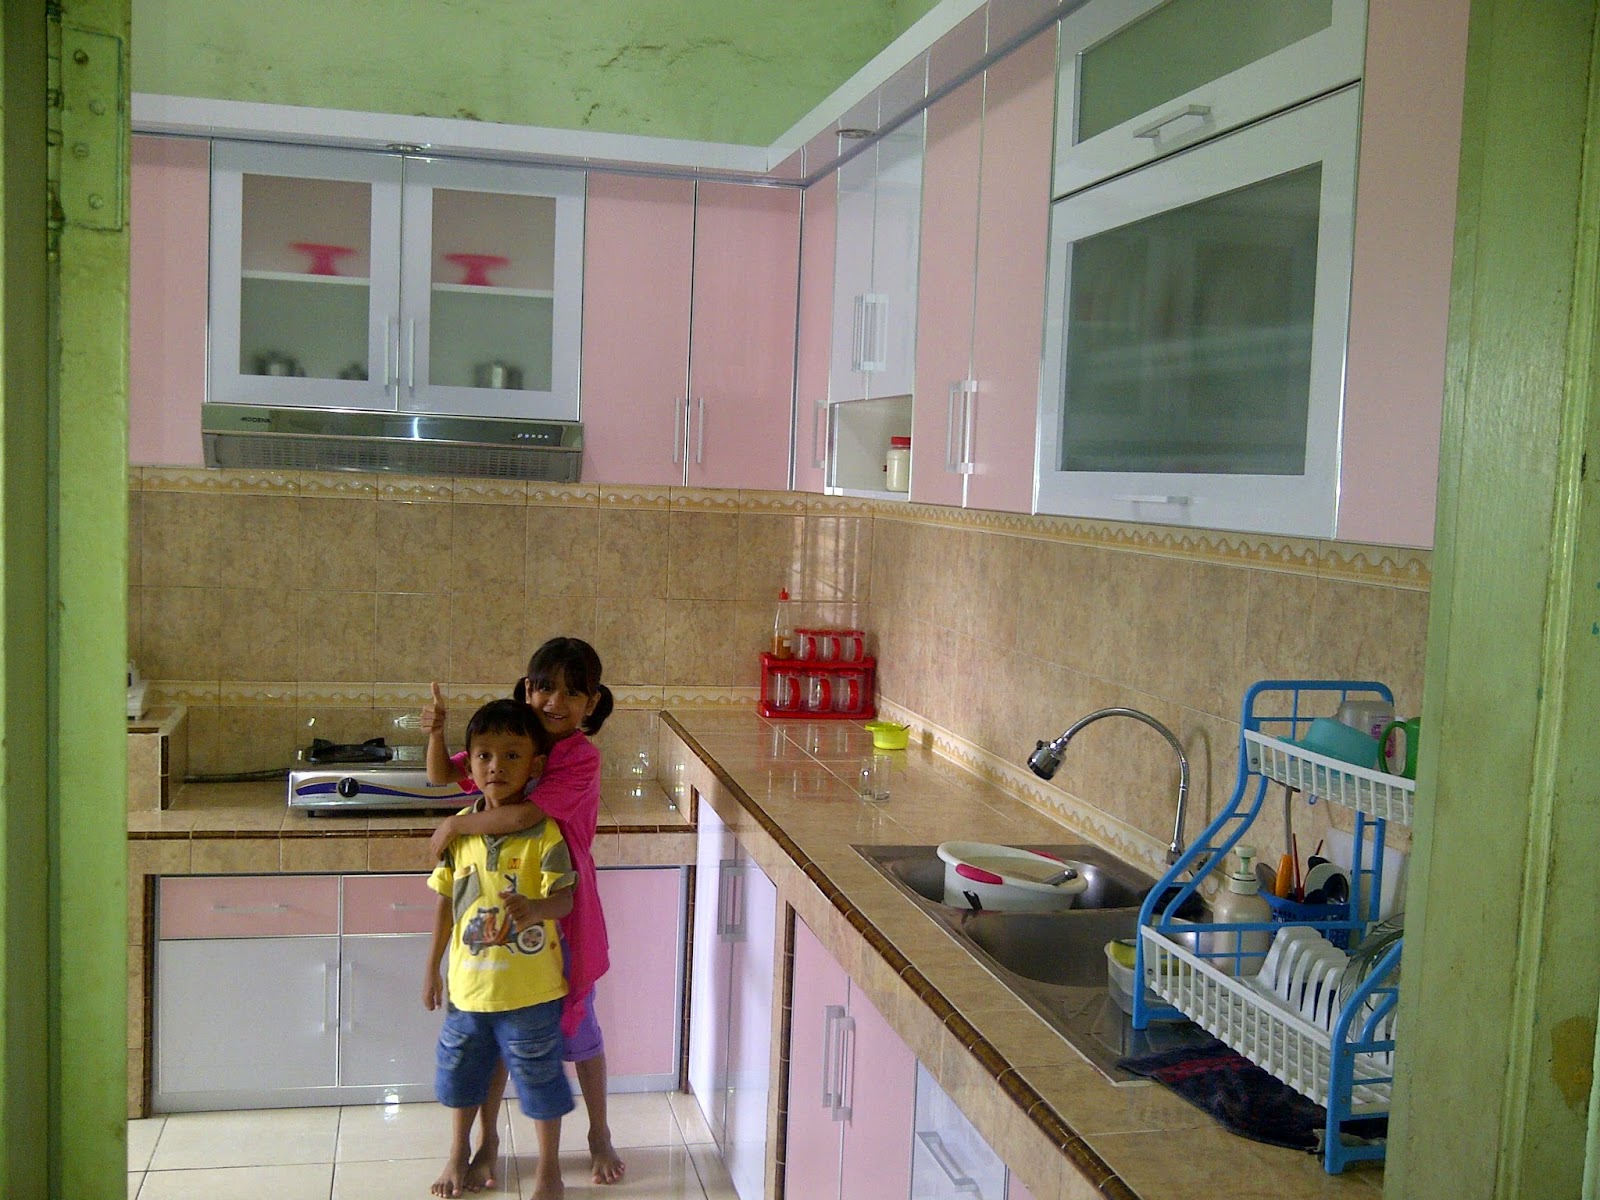 Kitchen Set Bekasi